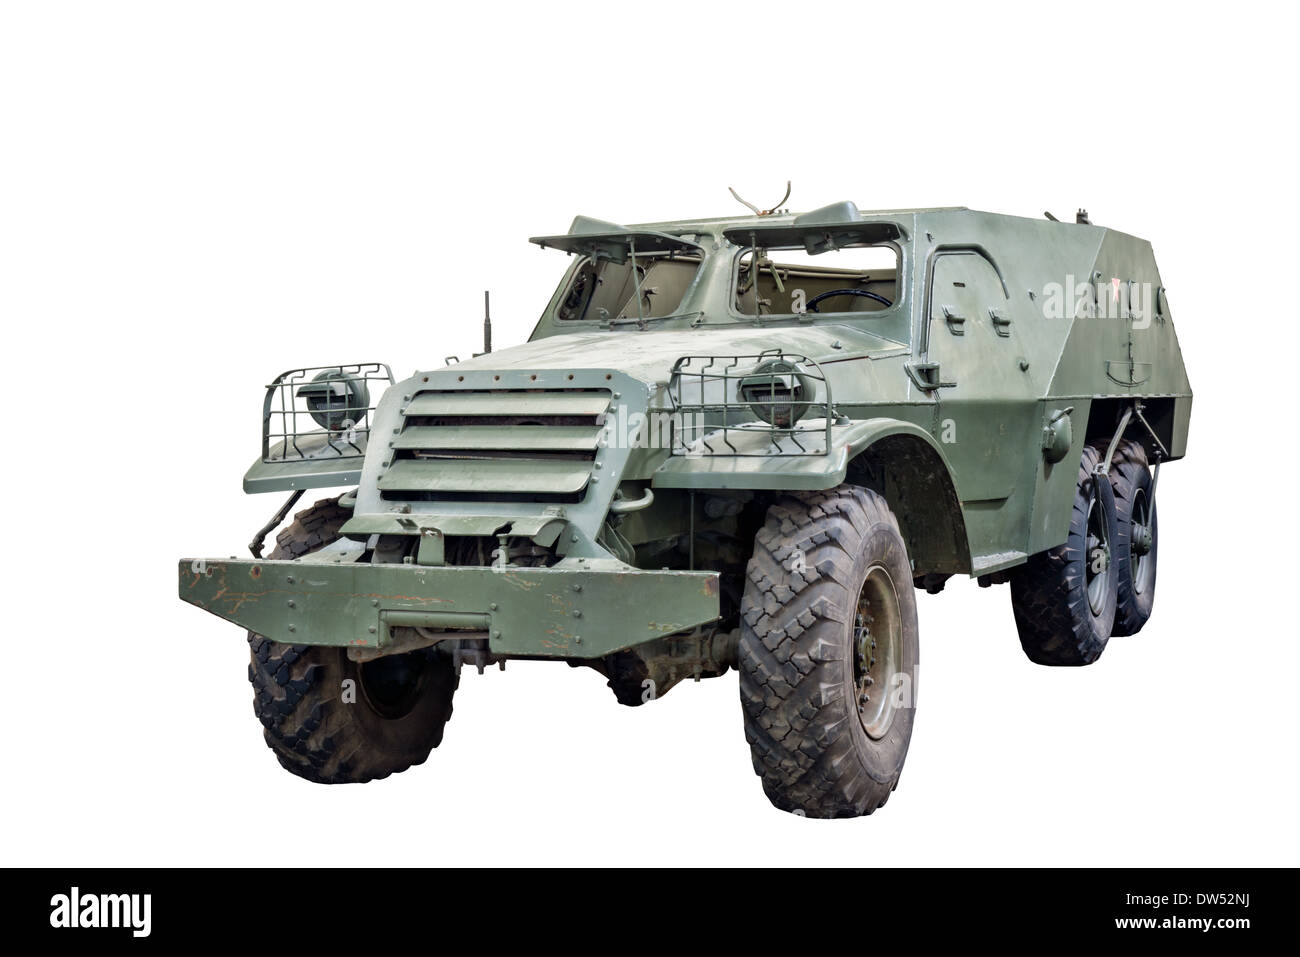 Une coupe d'un BTR soviétique 152 armoured personnel carrier utilisé par les forces russes et d'autres armées du Pacte de Varsovie Banque D'Images